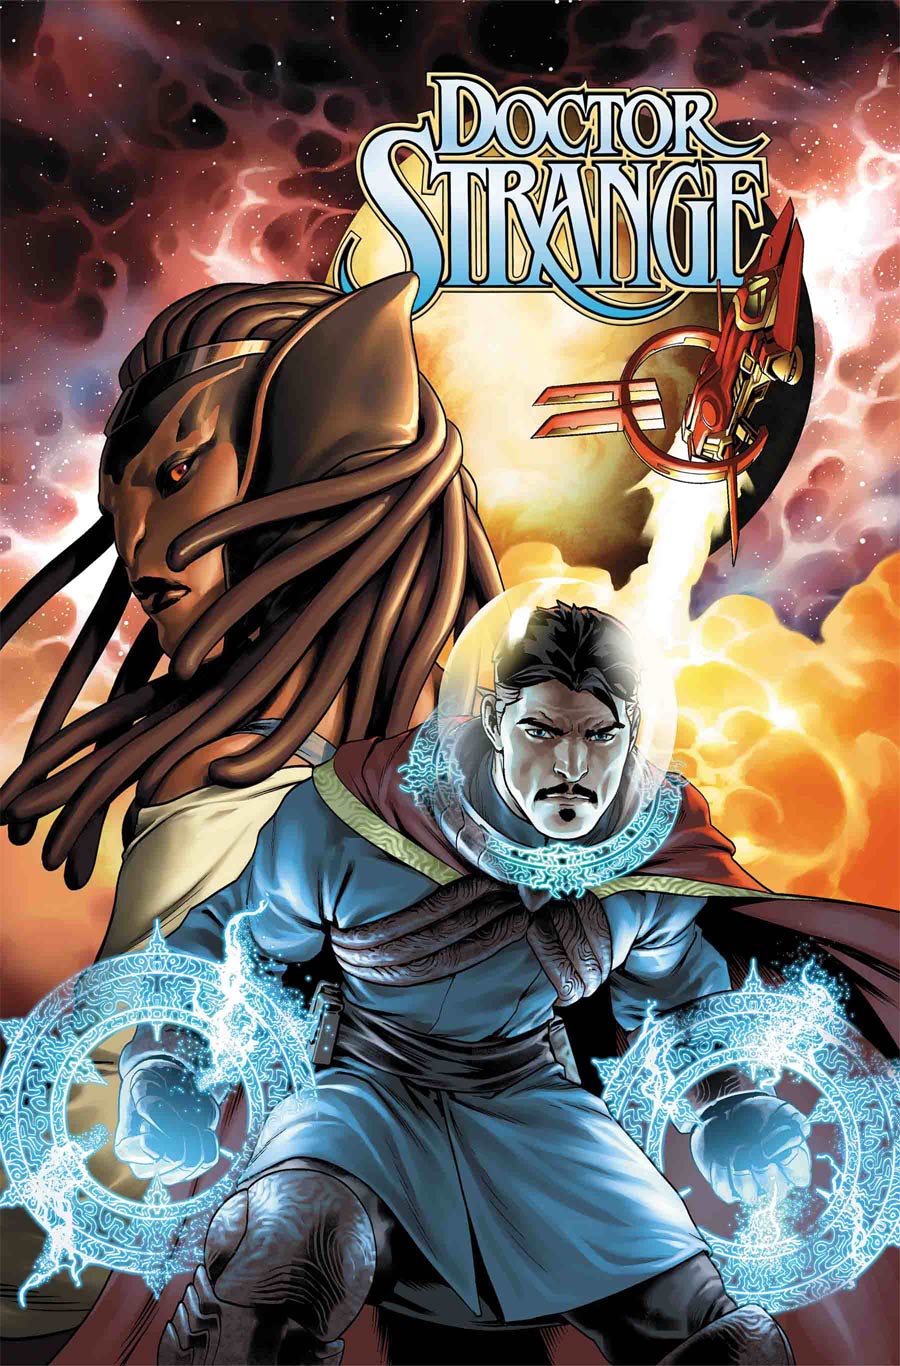 Doctor Strange Vol 5 #1 By Jesus Saiz Poster